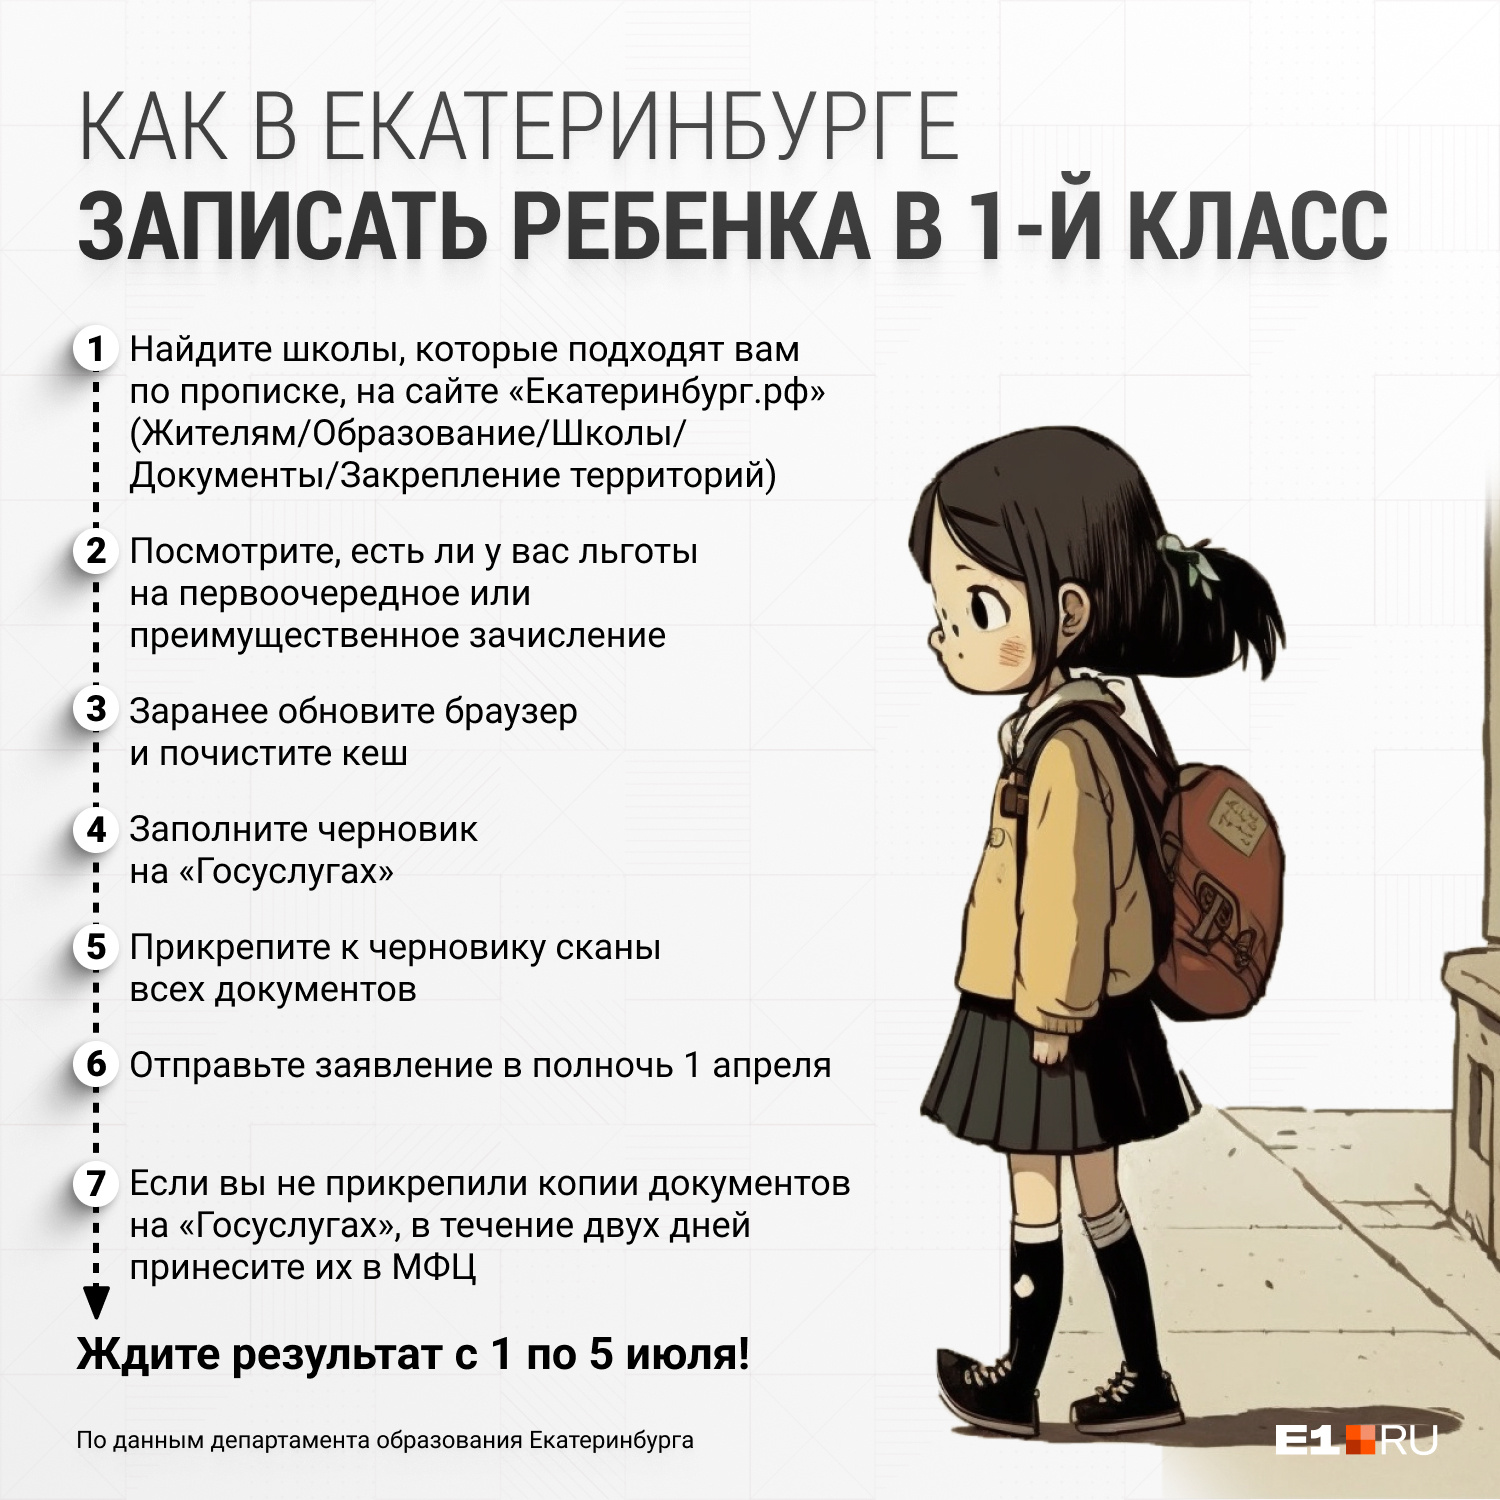 В эту ночь поспать не получится. Как записать ребенка в первый класс в Екатеринбурге: инструкция